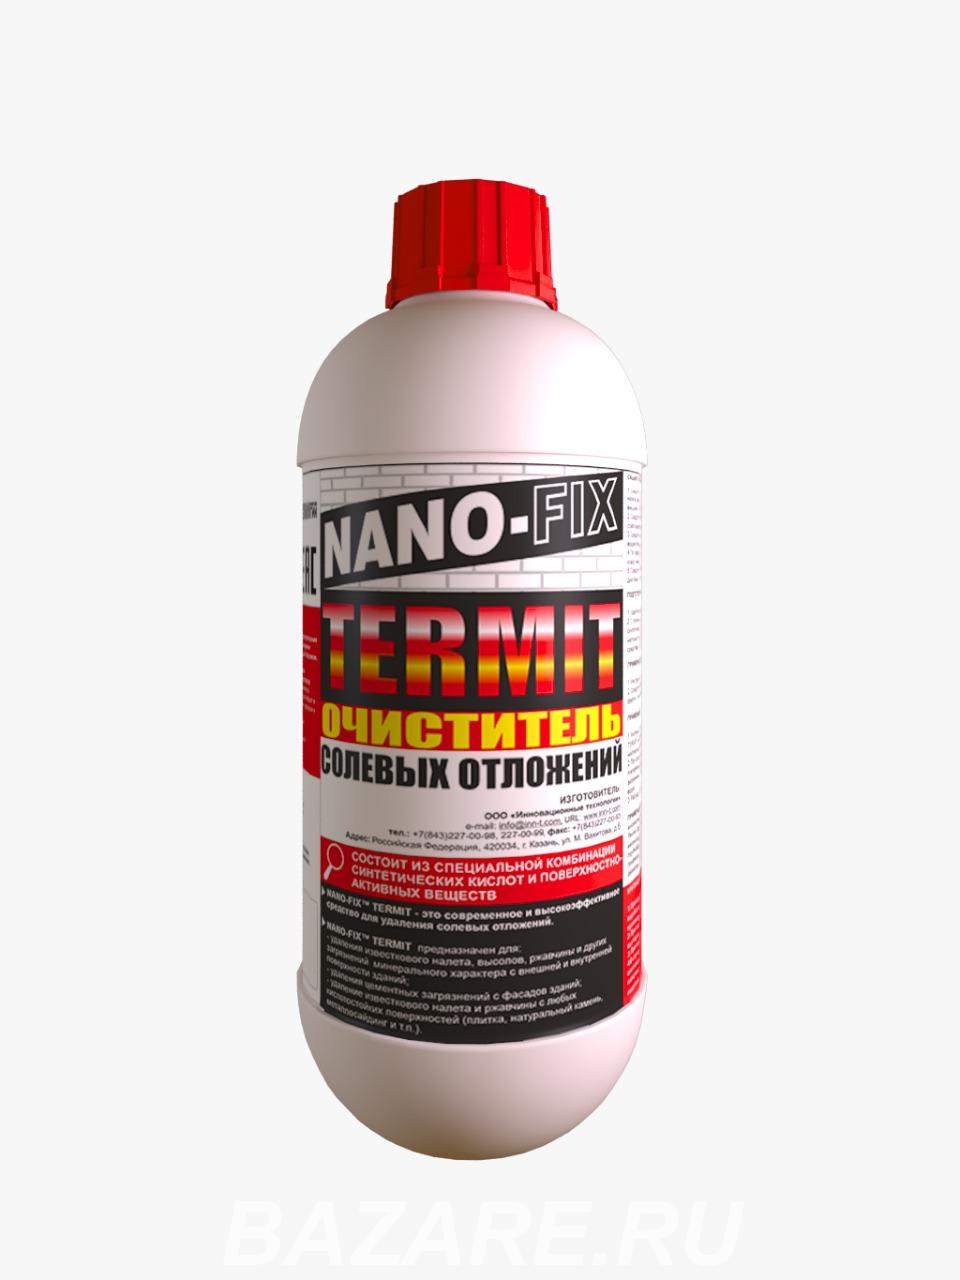 Nano-Fix termit - средство от высолов, Москва